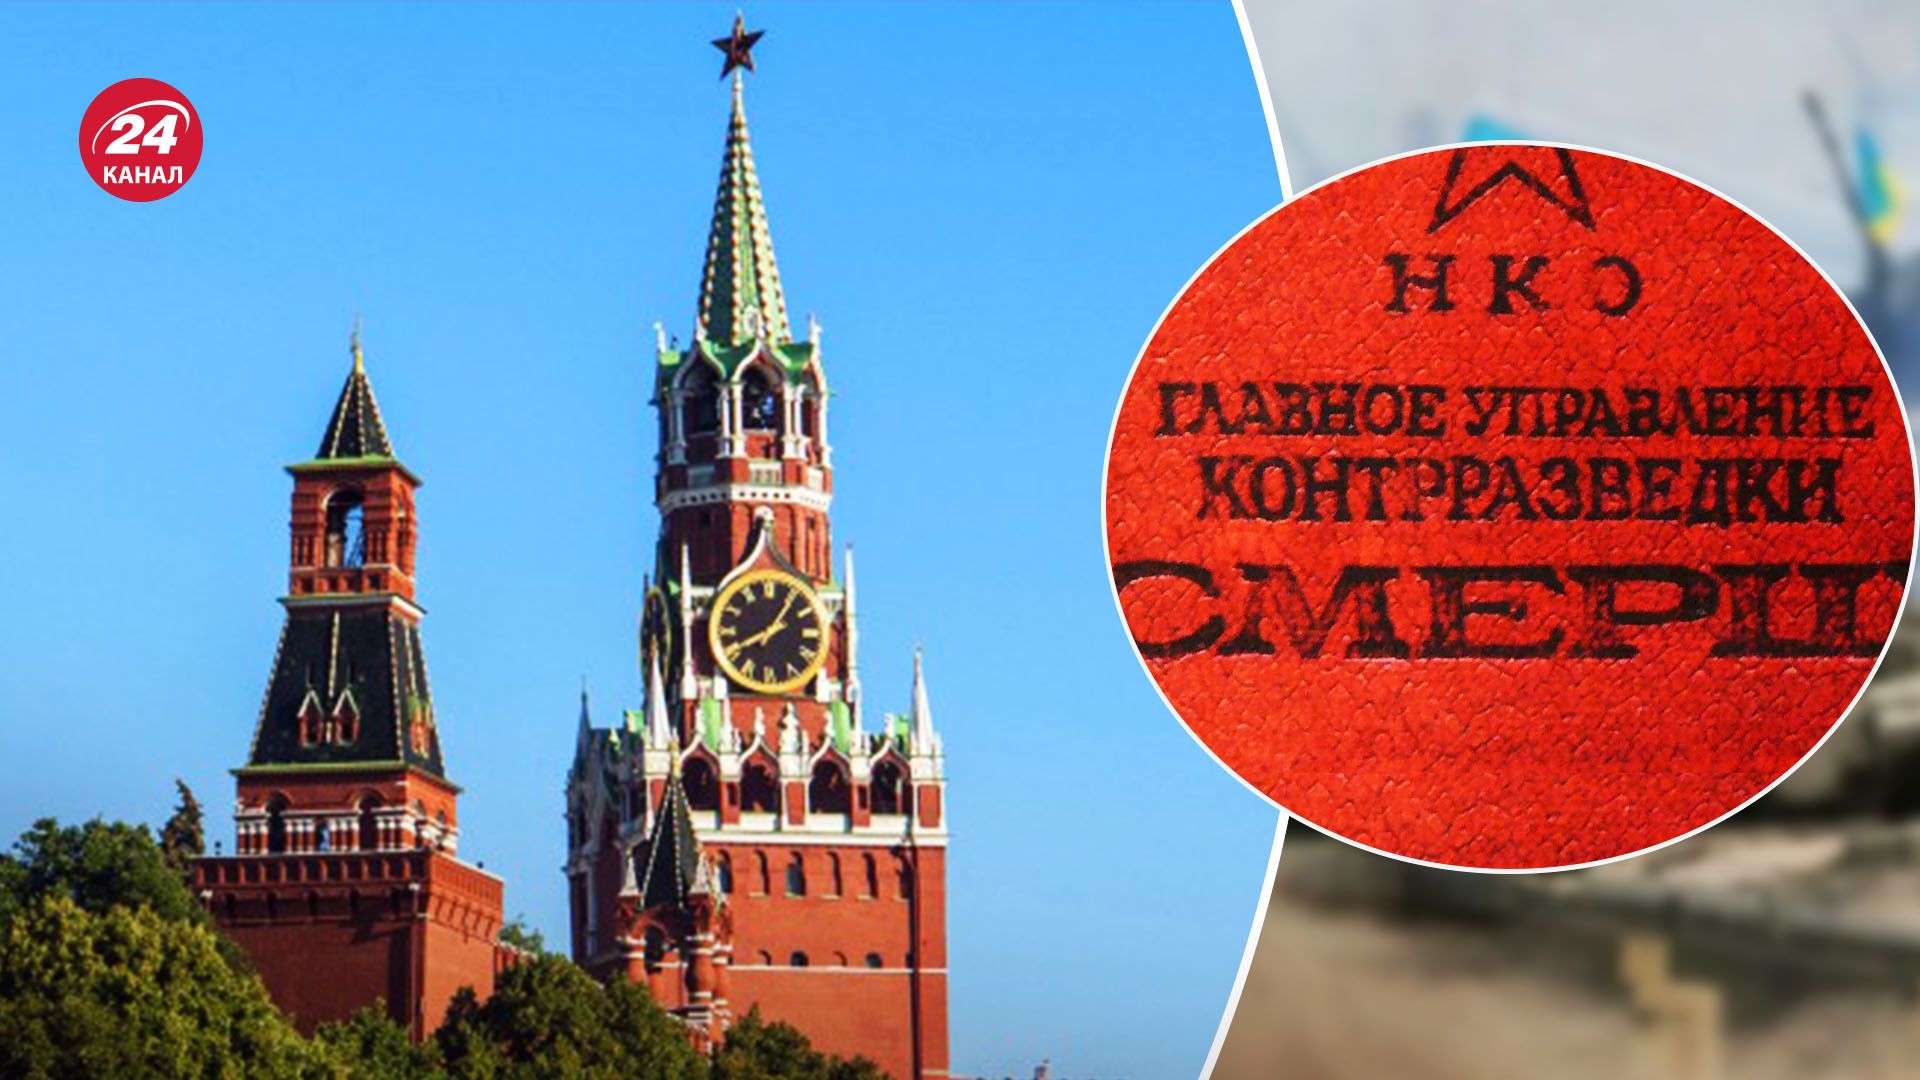 Россия возобновляет контрразведку "СМЕРШ" - что стоит за этой инициативой Кремля - 24 Канал